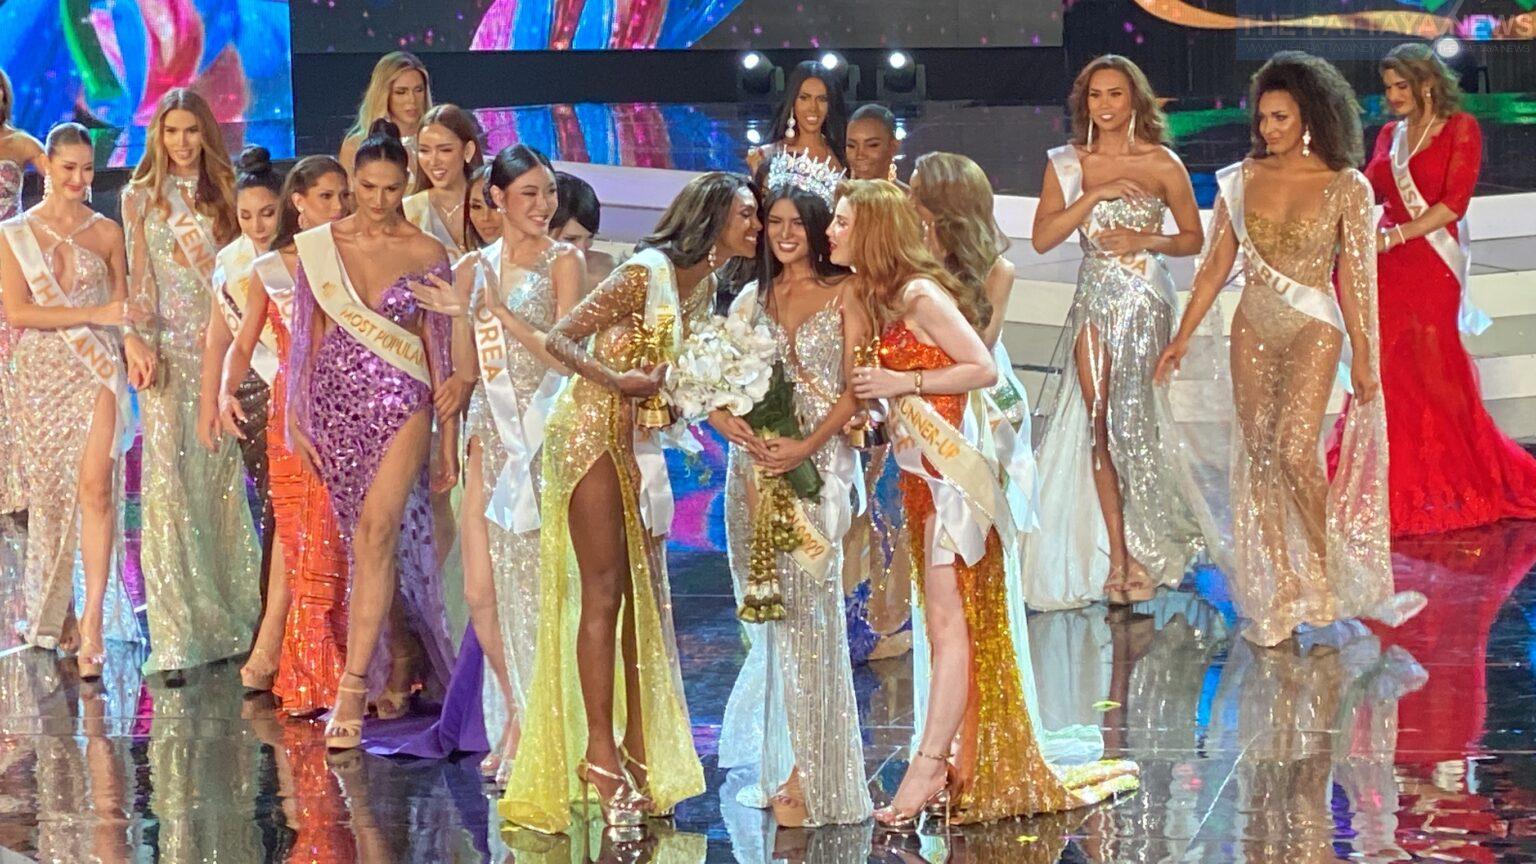 The Philippines’ Fuschia Anne Ravena wins Miss International Queen